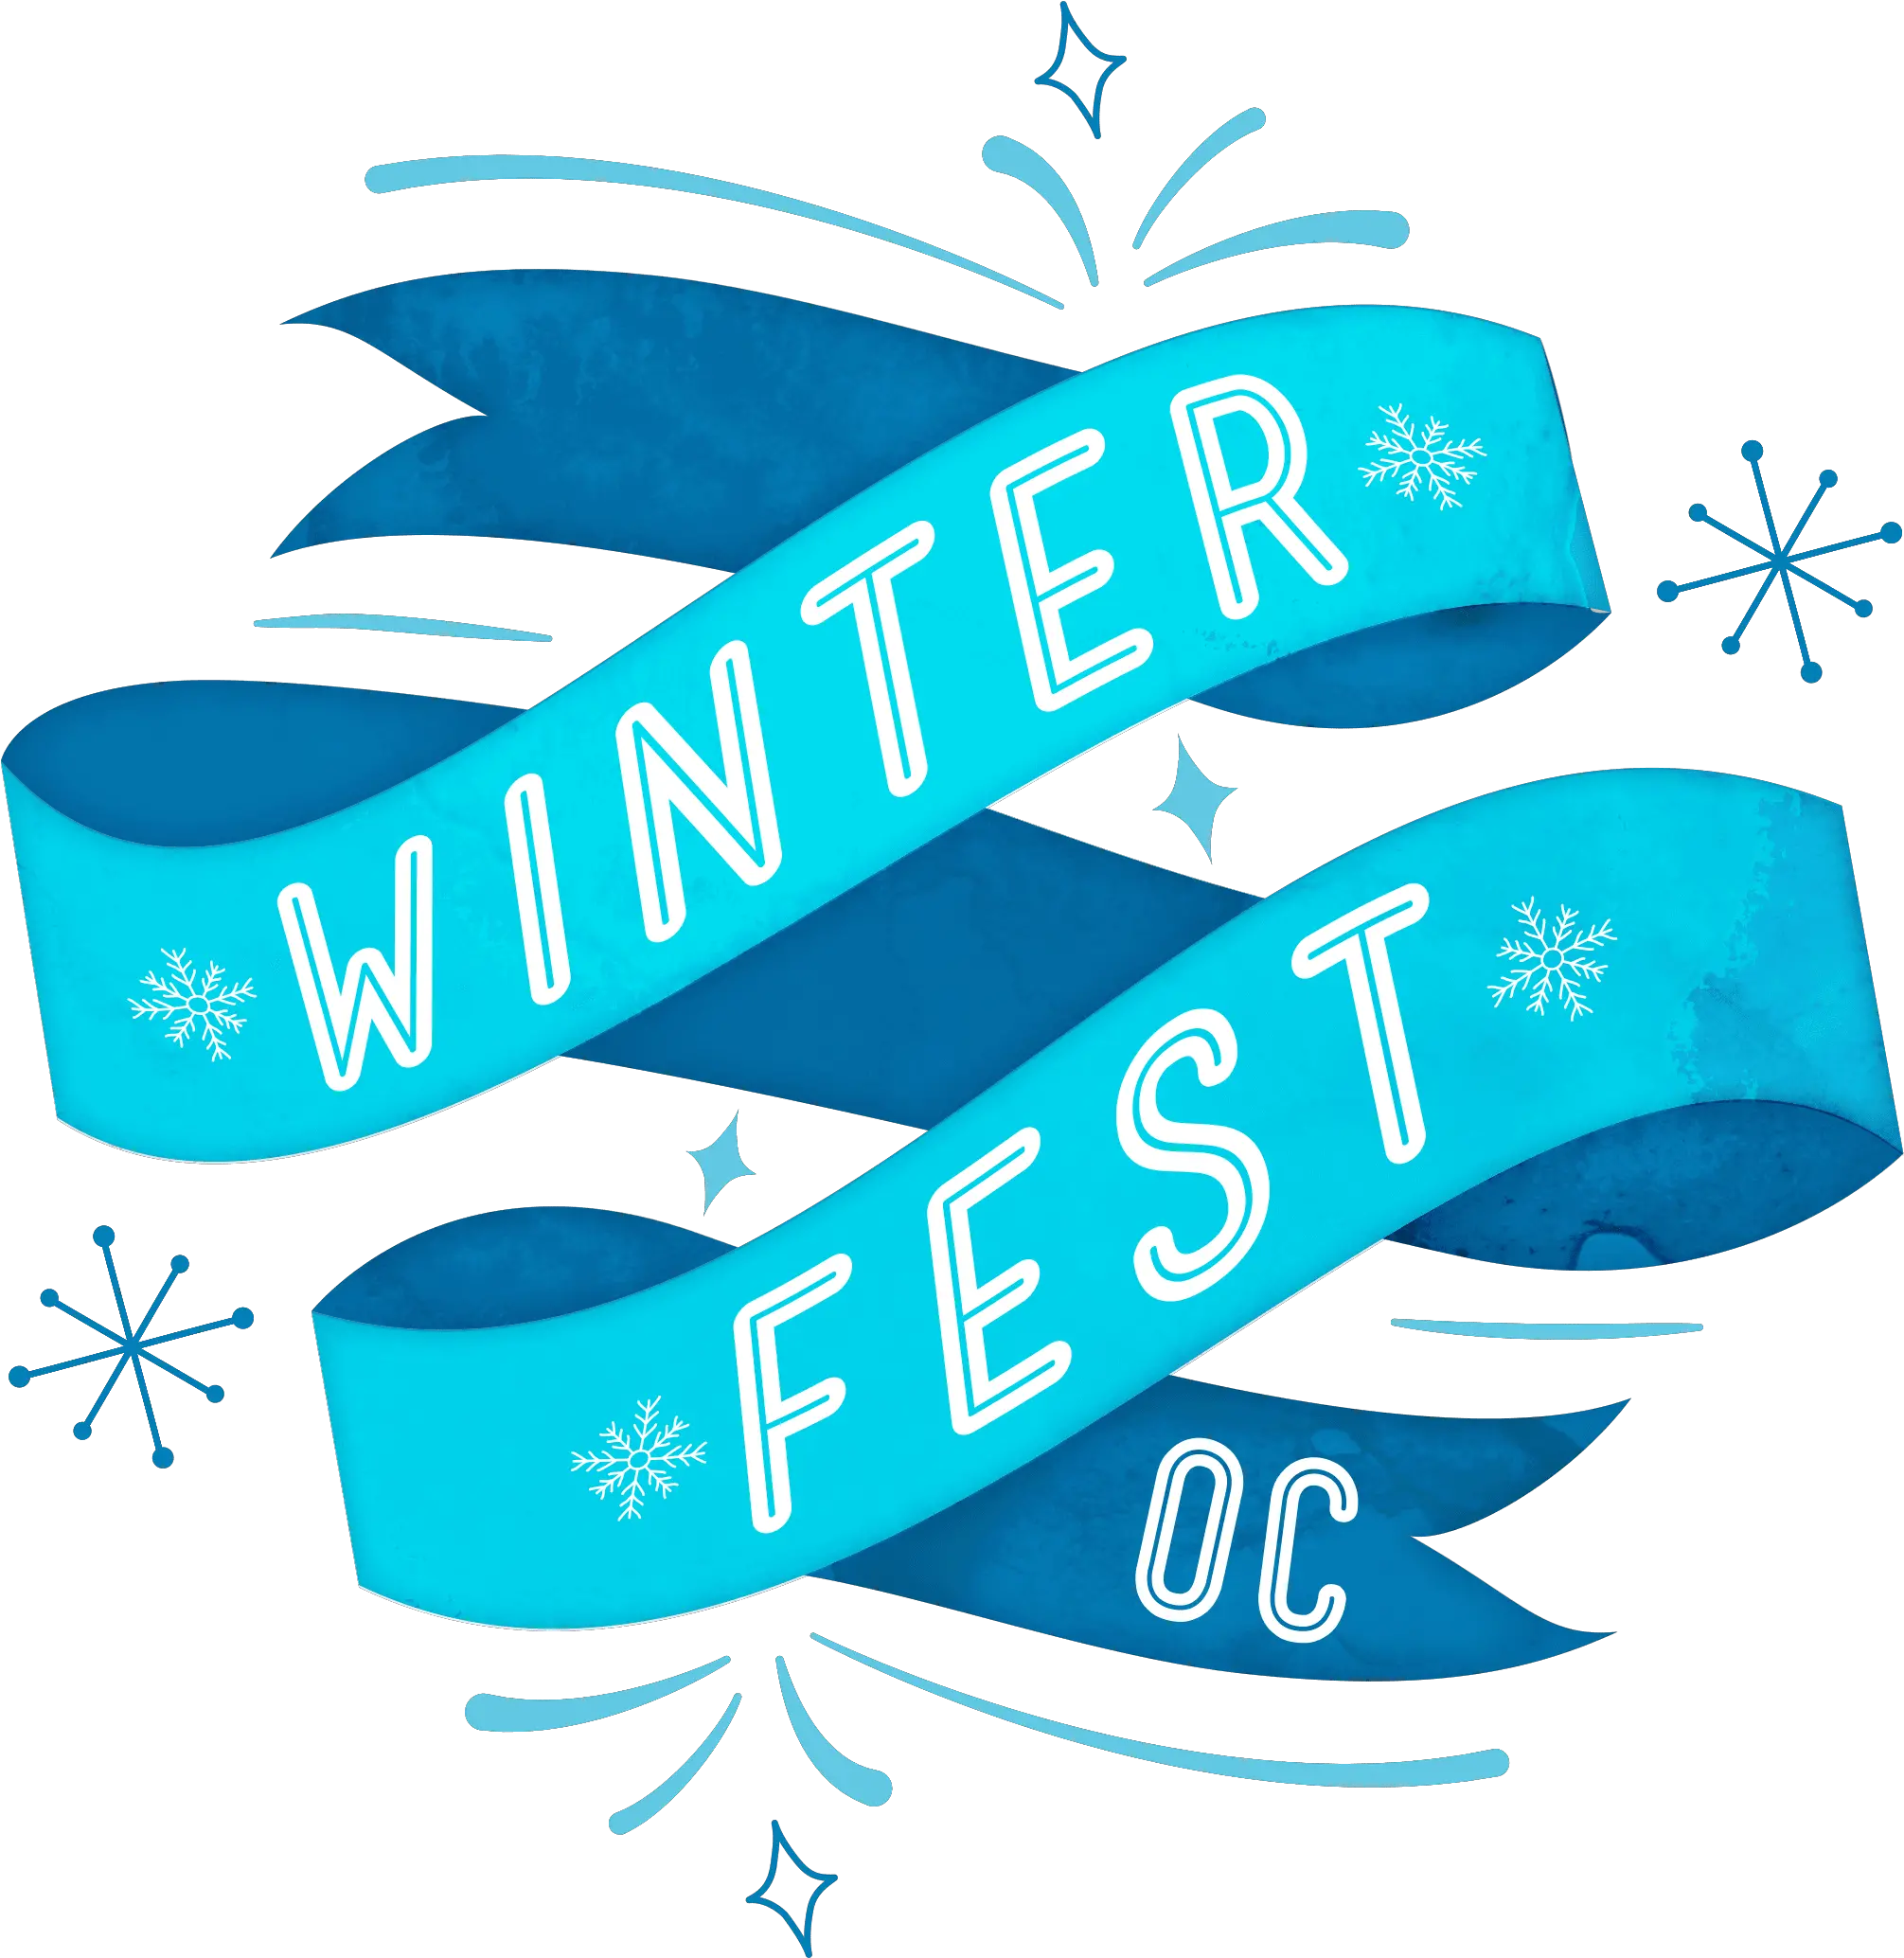 Winterfest Oc Is Back December 19th Winter Fest Oc 2019 Png Octonauts Logo